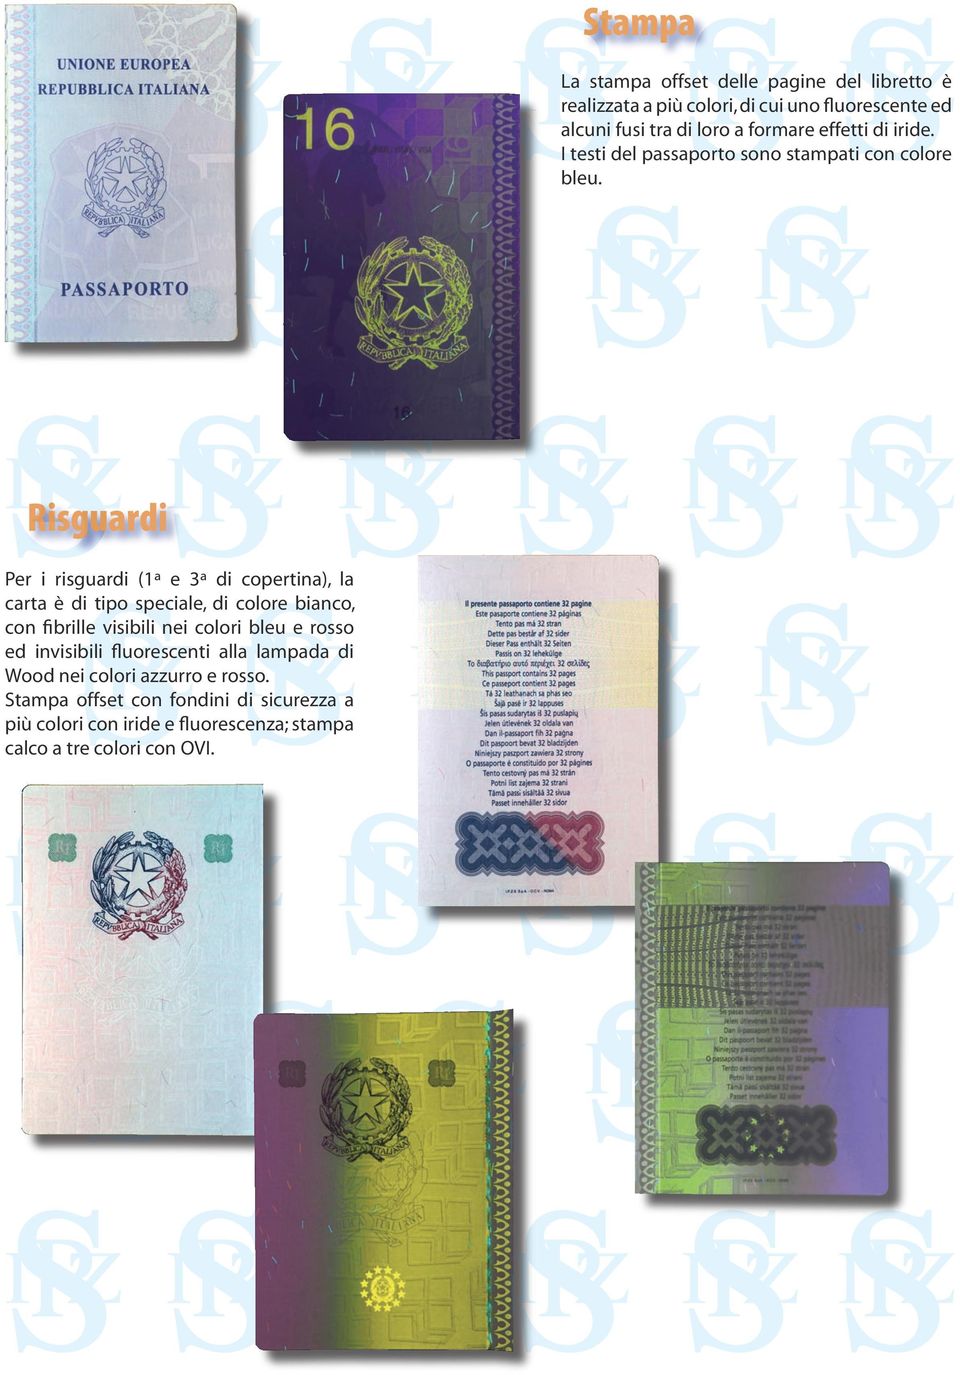 Risguardi Per i risguardi (1ª e 3ª di copertina), la carta è di tipo speciale, di colore bianco, con fibrille visibili nei colori bleu